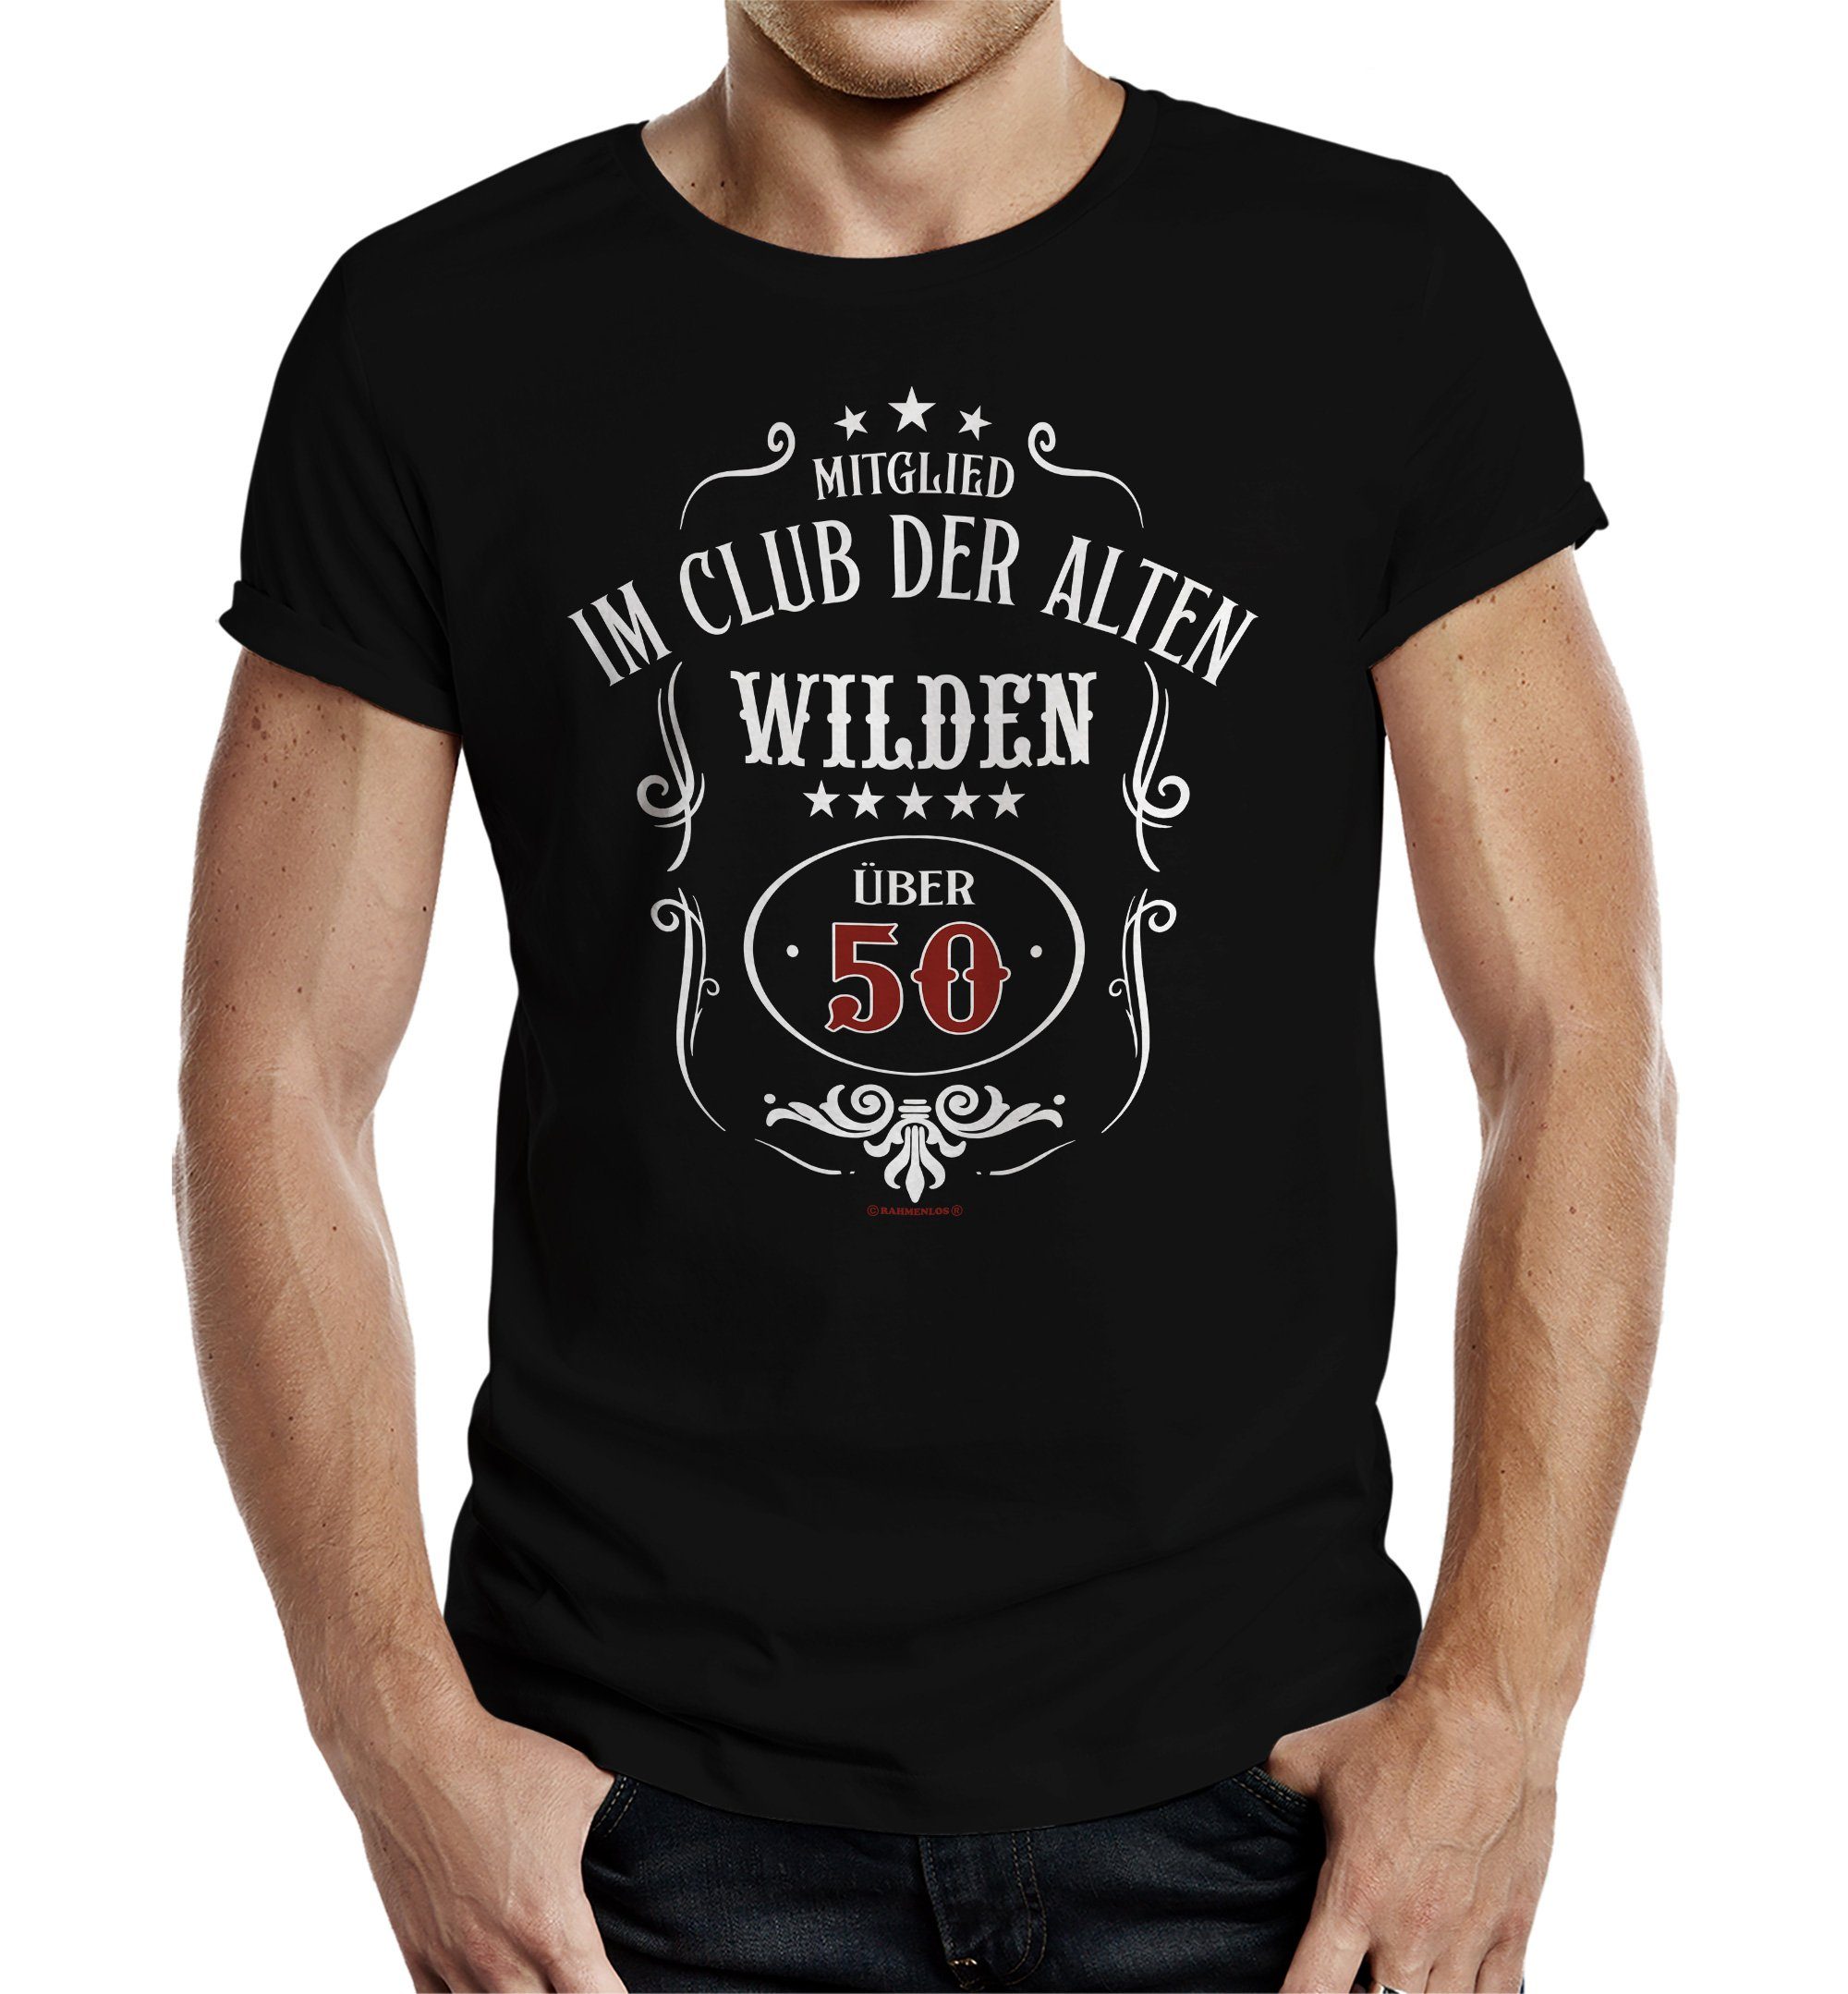 RAHMENLOS® T-Shirt als Geschenk zum 50. - Club der Alten Wilden über 50